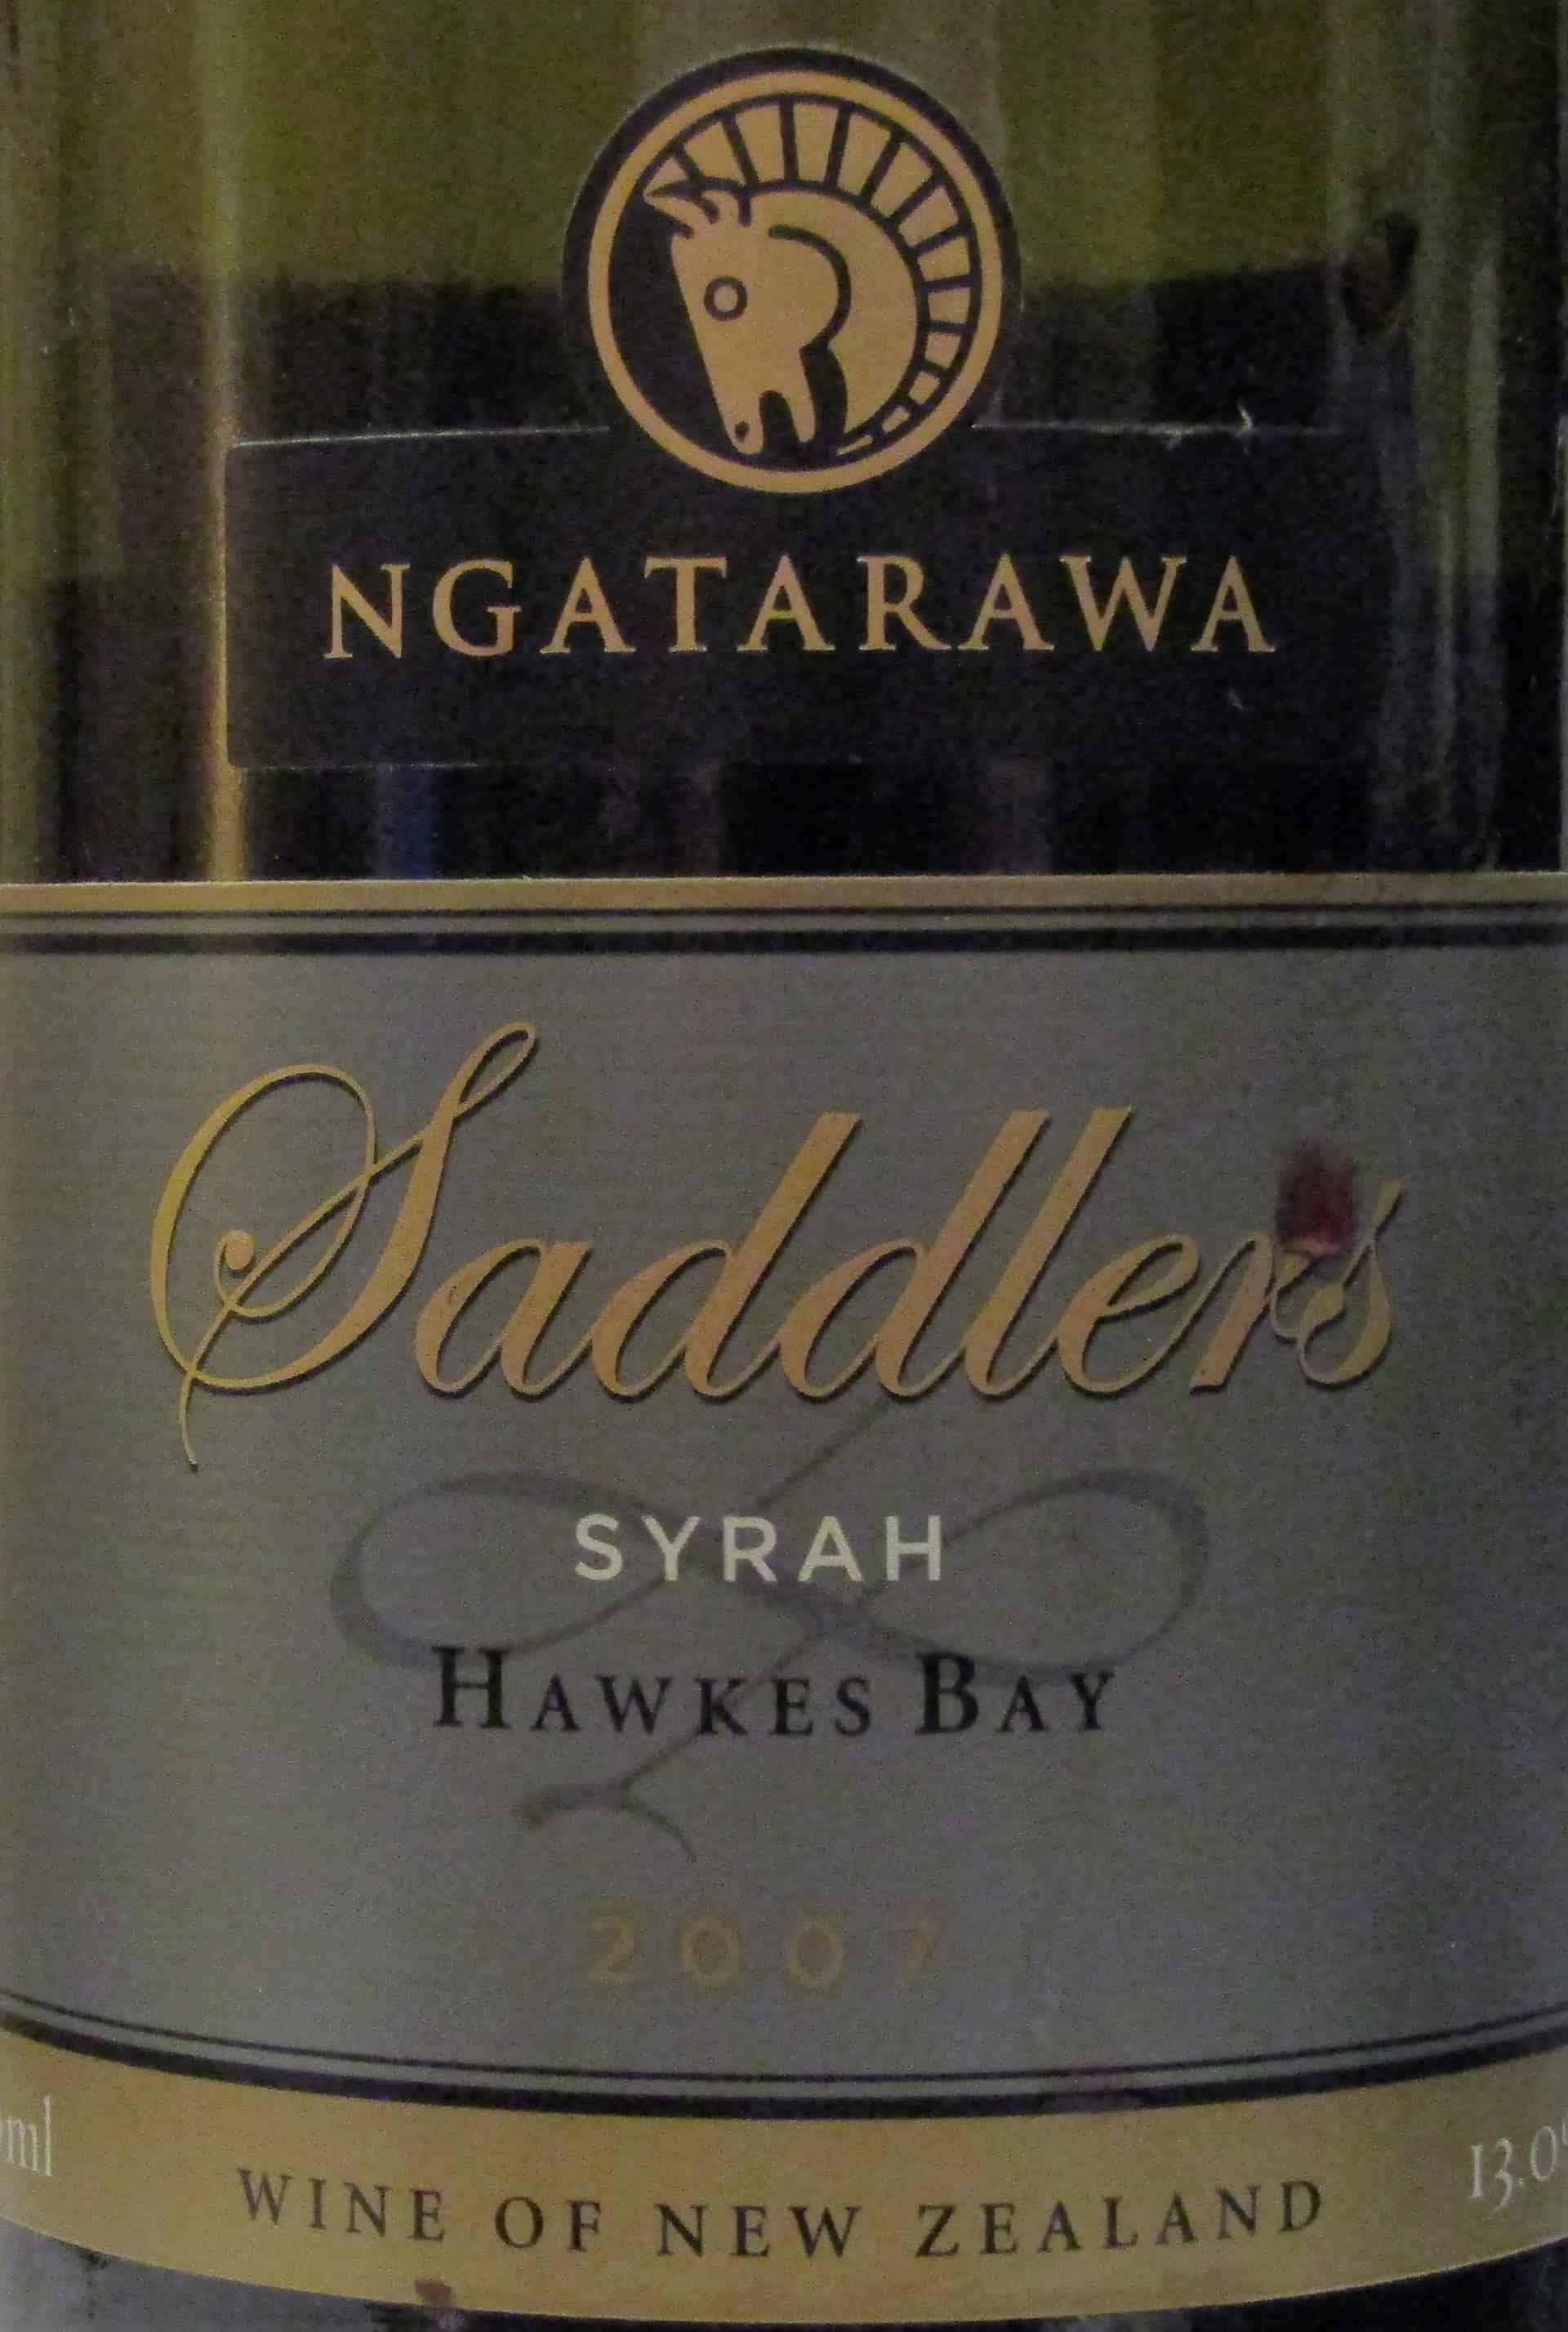 Ngatarawa 'Saddler's' Hawke's Bay Syrah 2007